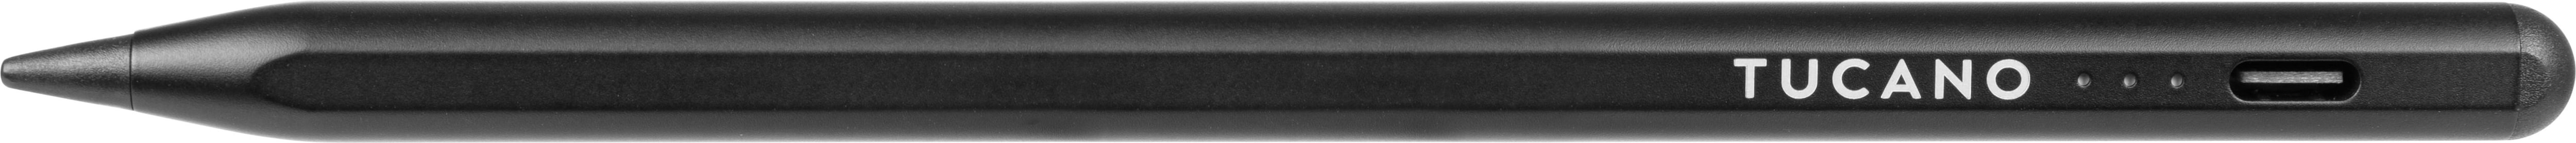 Tucano Universal Active Stylus Pen - Eingabestift schwarz, Stylus, Schwarz